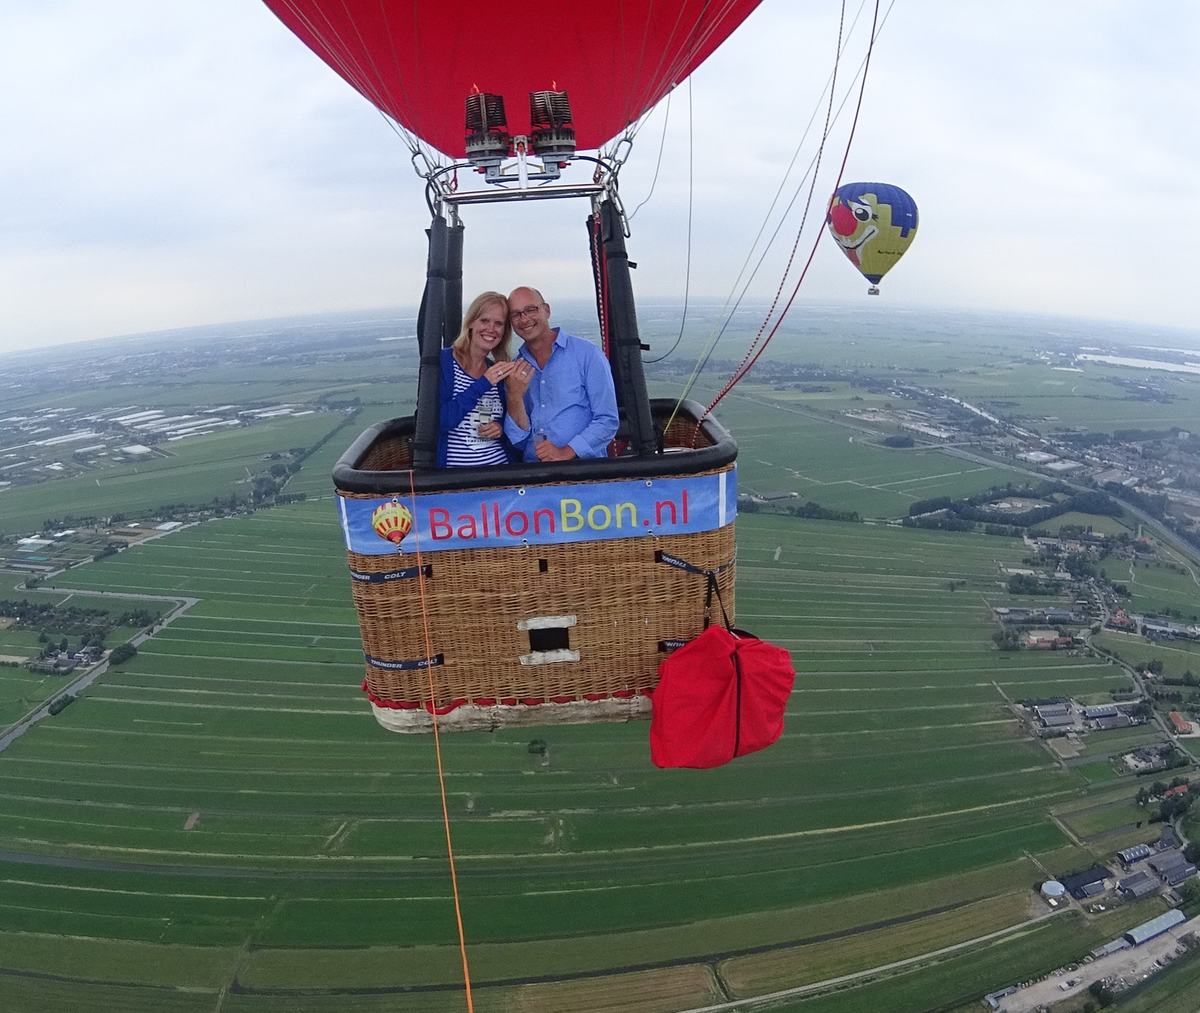 Luchtballonvaart maken met BallonBon.nl | boven